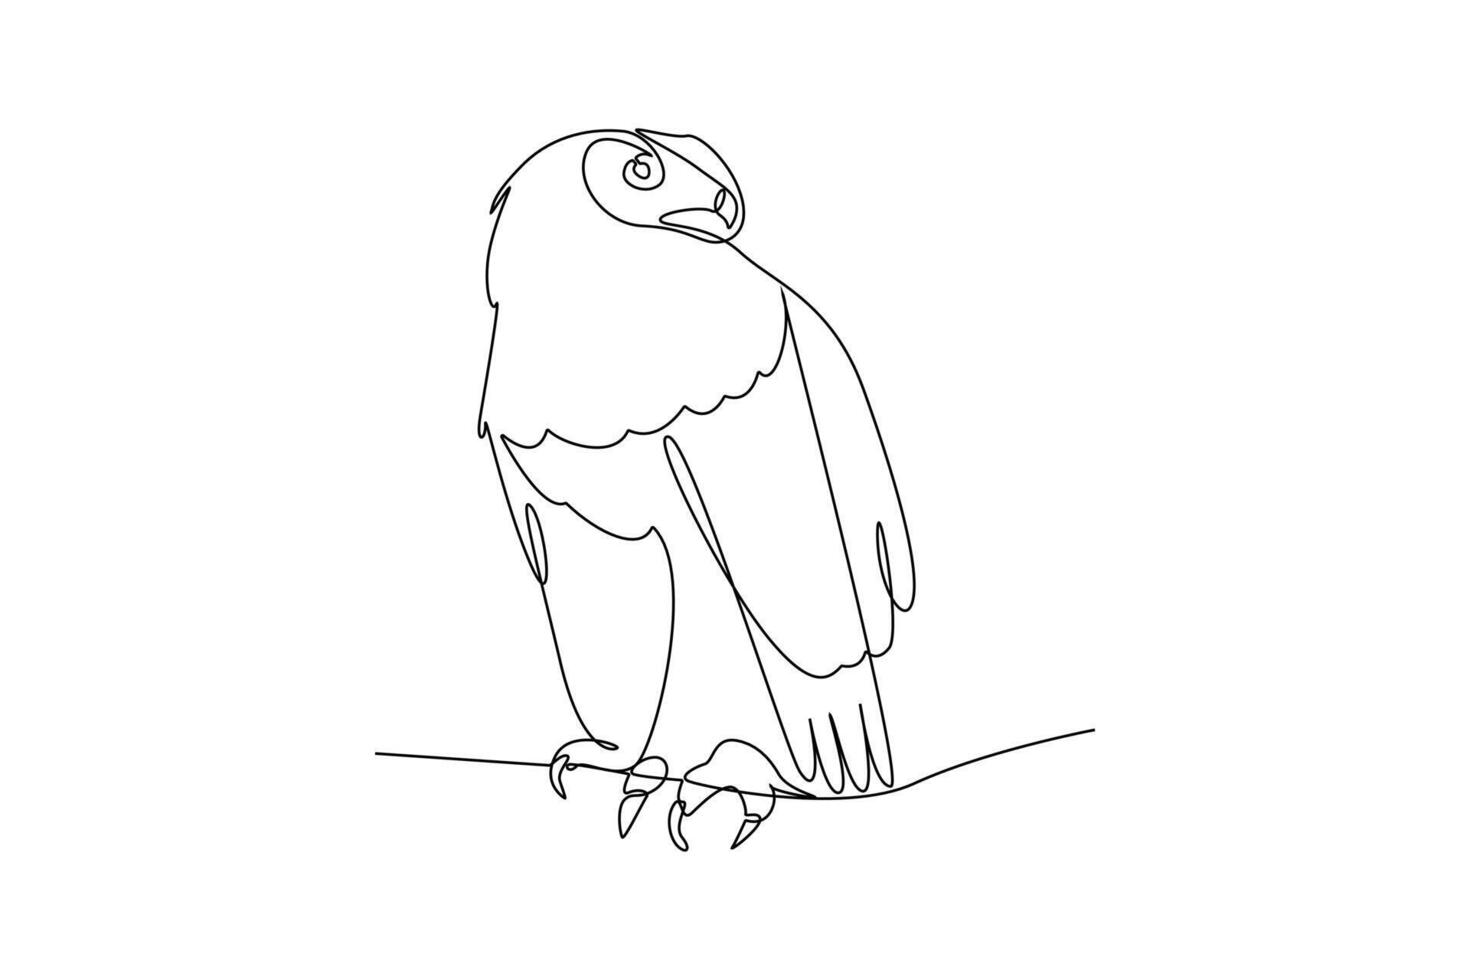 einer kontinuierlich Linie Zeichnung von fliegend Vogel Konzept. Gekritzel Vektor Illustration im einfach linear Stil.